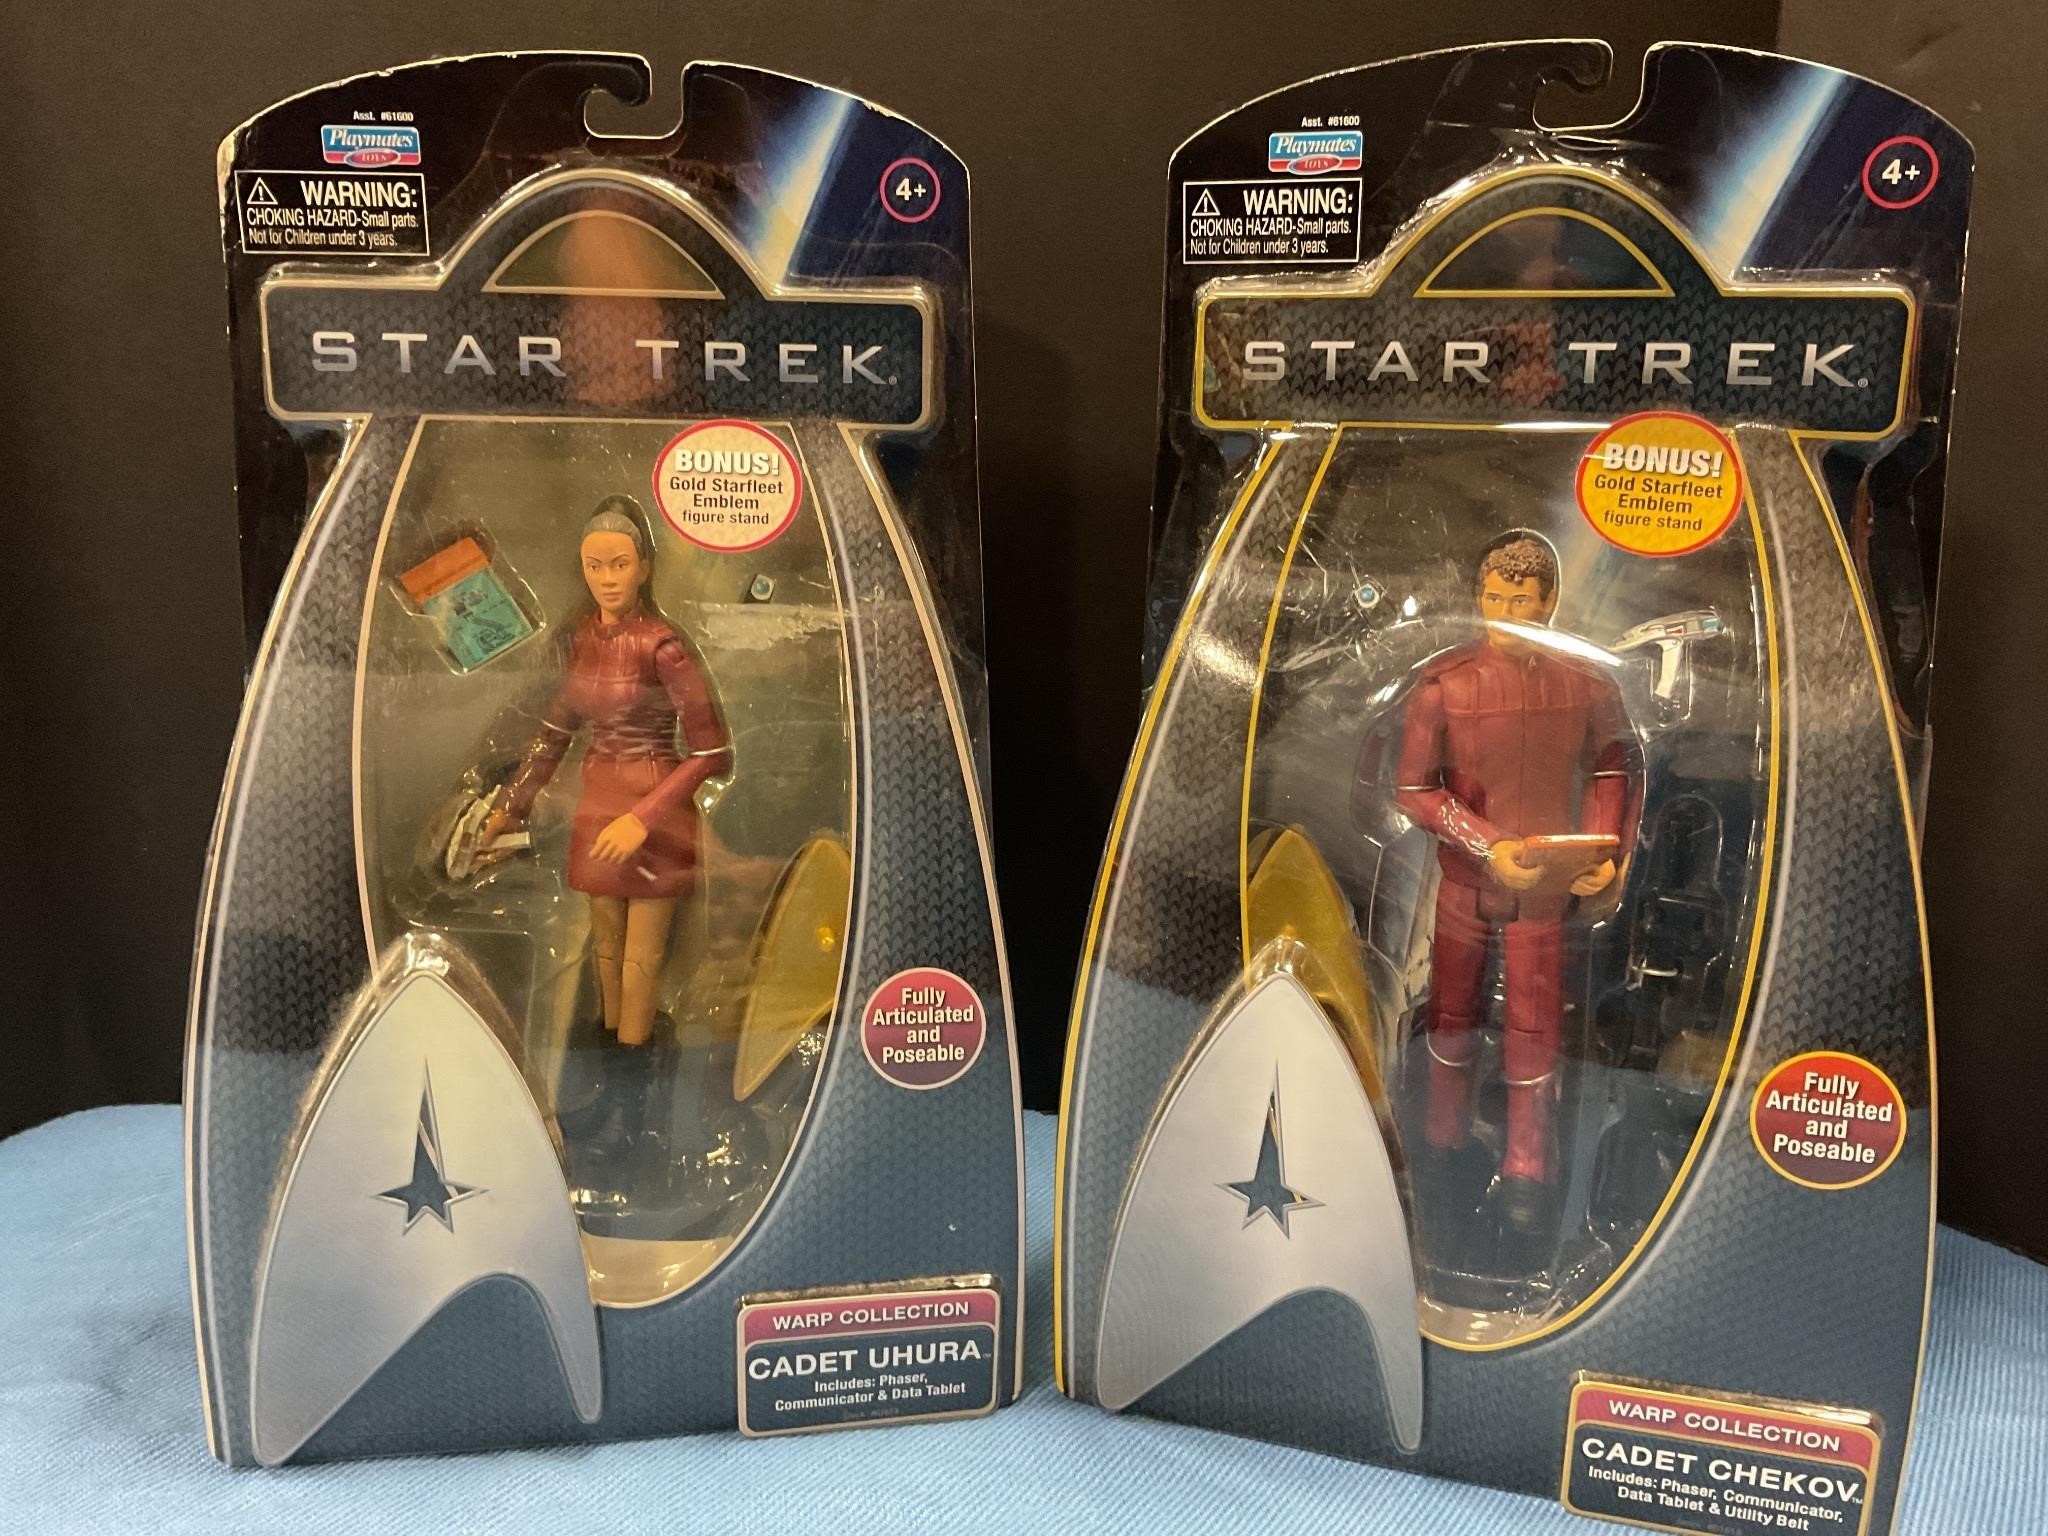 2 Star Trek figures